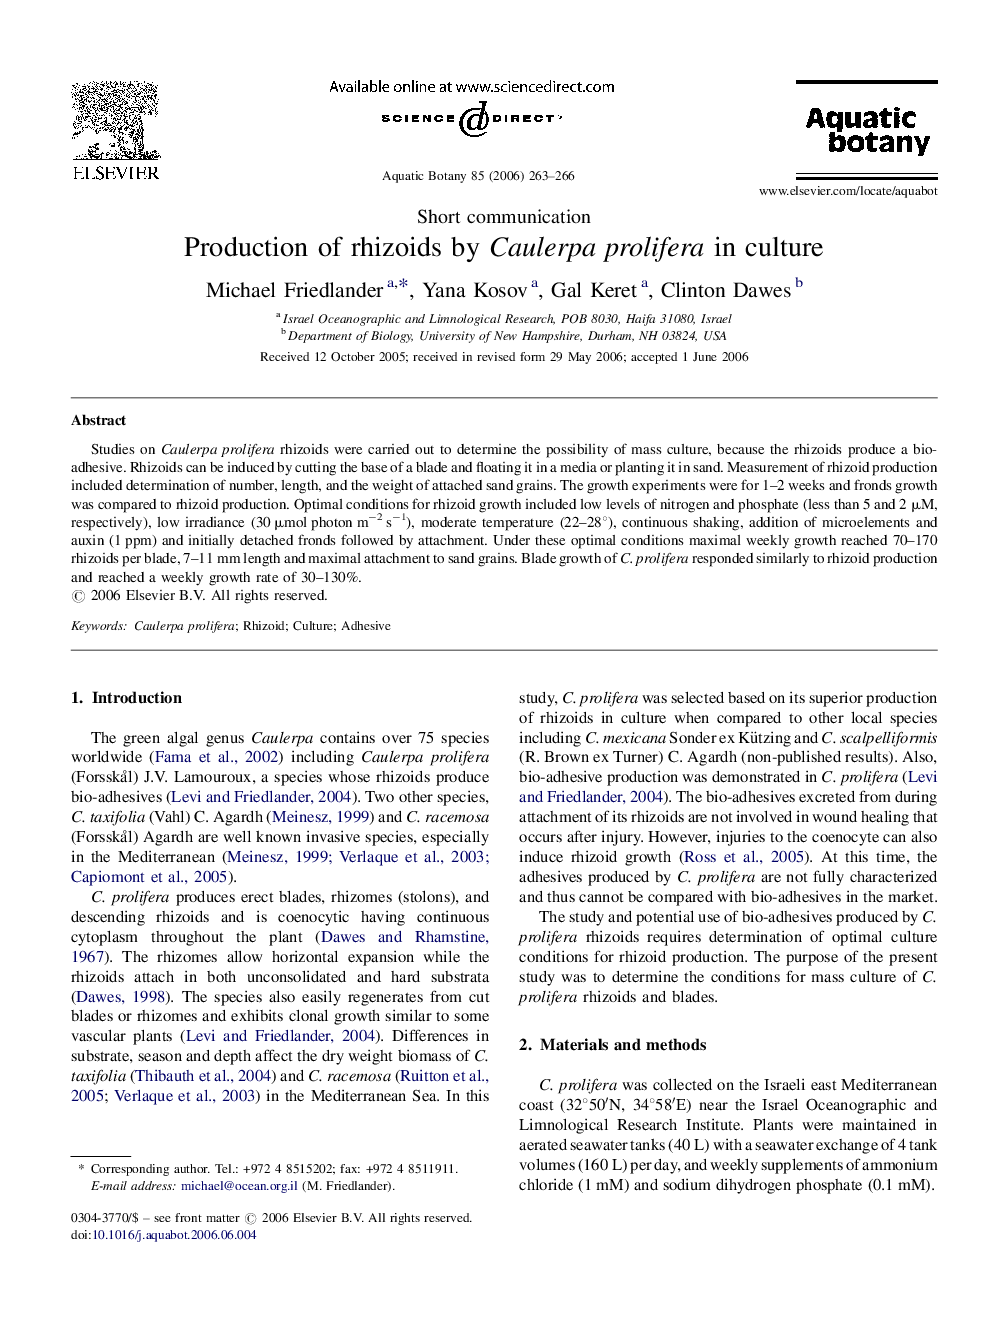 Production of rhizoids by Caulerpa prolifera in culture